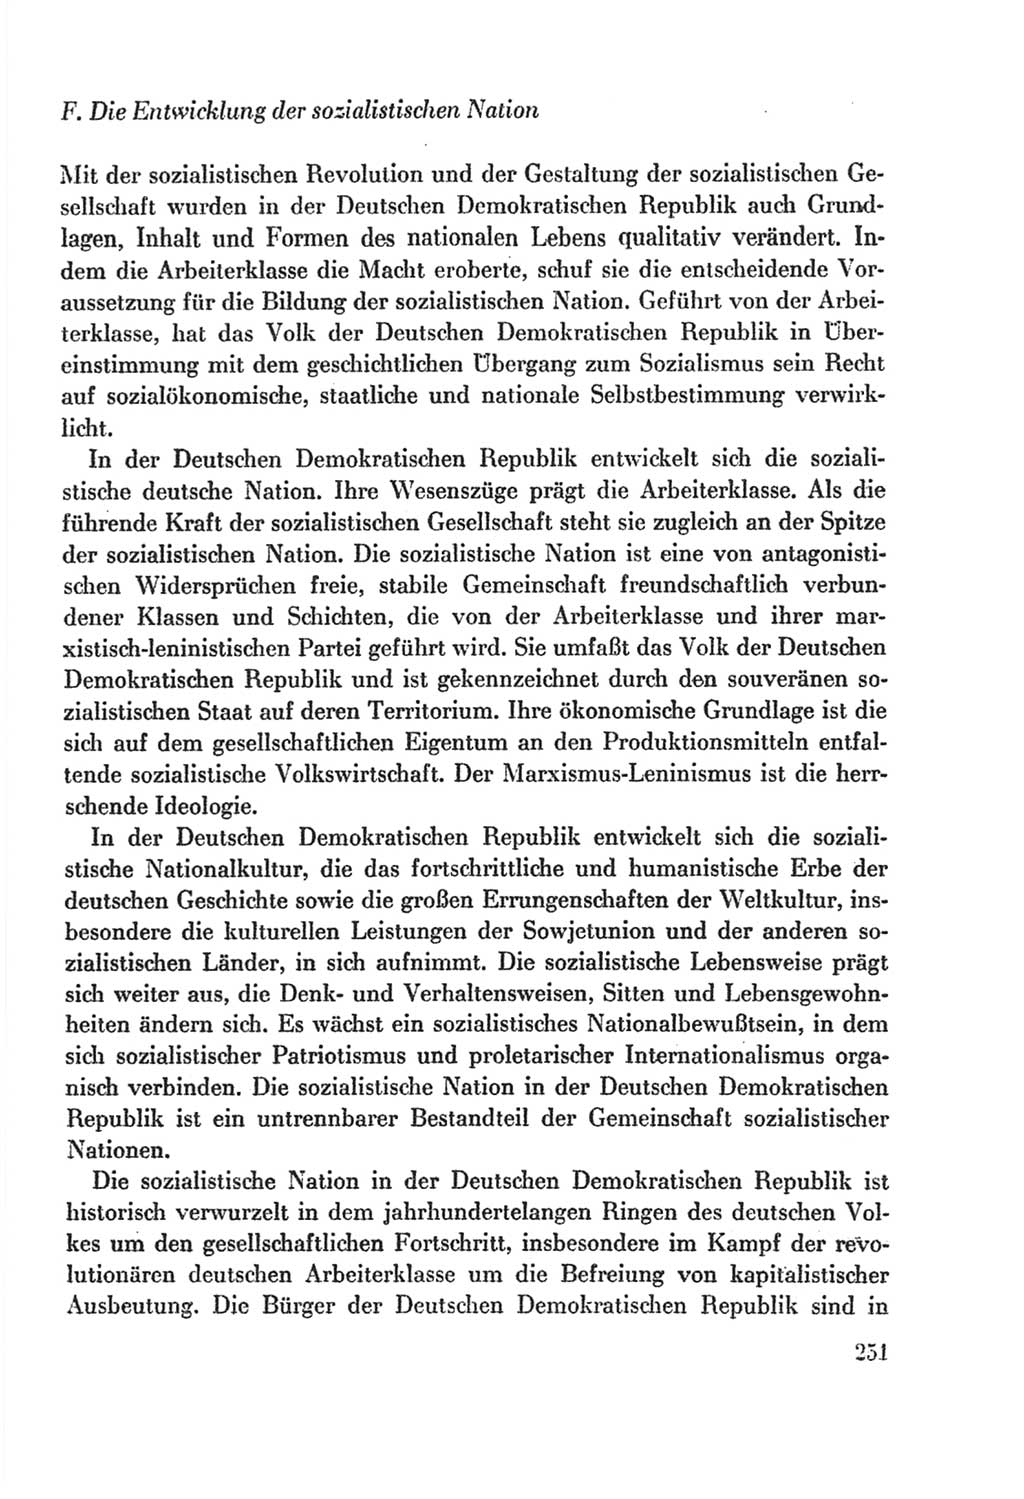 Protokoll der Verhandlungen des Ⅸ. Parteitages der Sozialistischen Einheitspartei Deutschlands (SED) [Deutsche Demokratische Republik (DDR)] 1976, Band 2, Seite 251 (Prot. Verh. Ⅸ. PT SED DDR 1976, Bd. 2, S. 251)